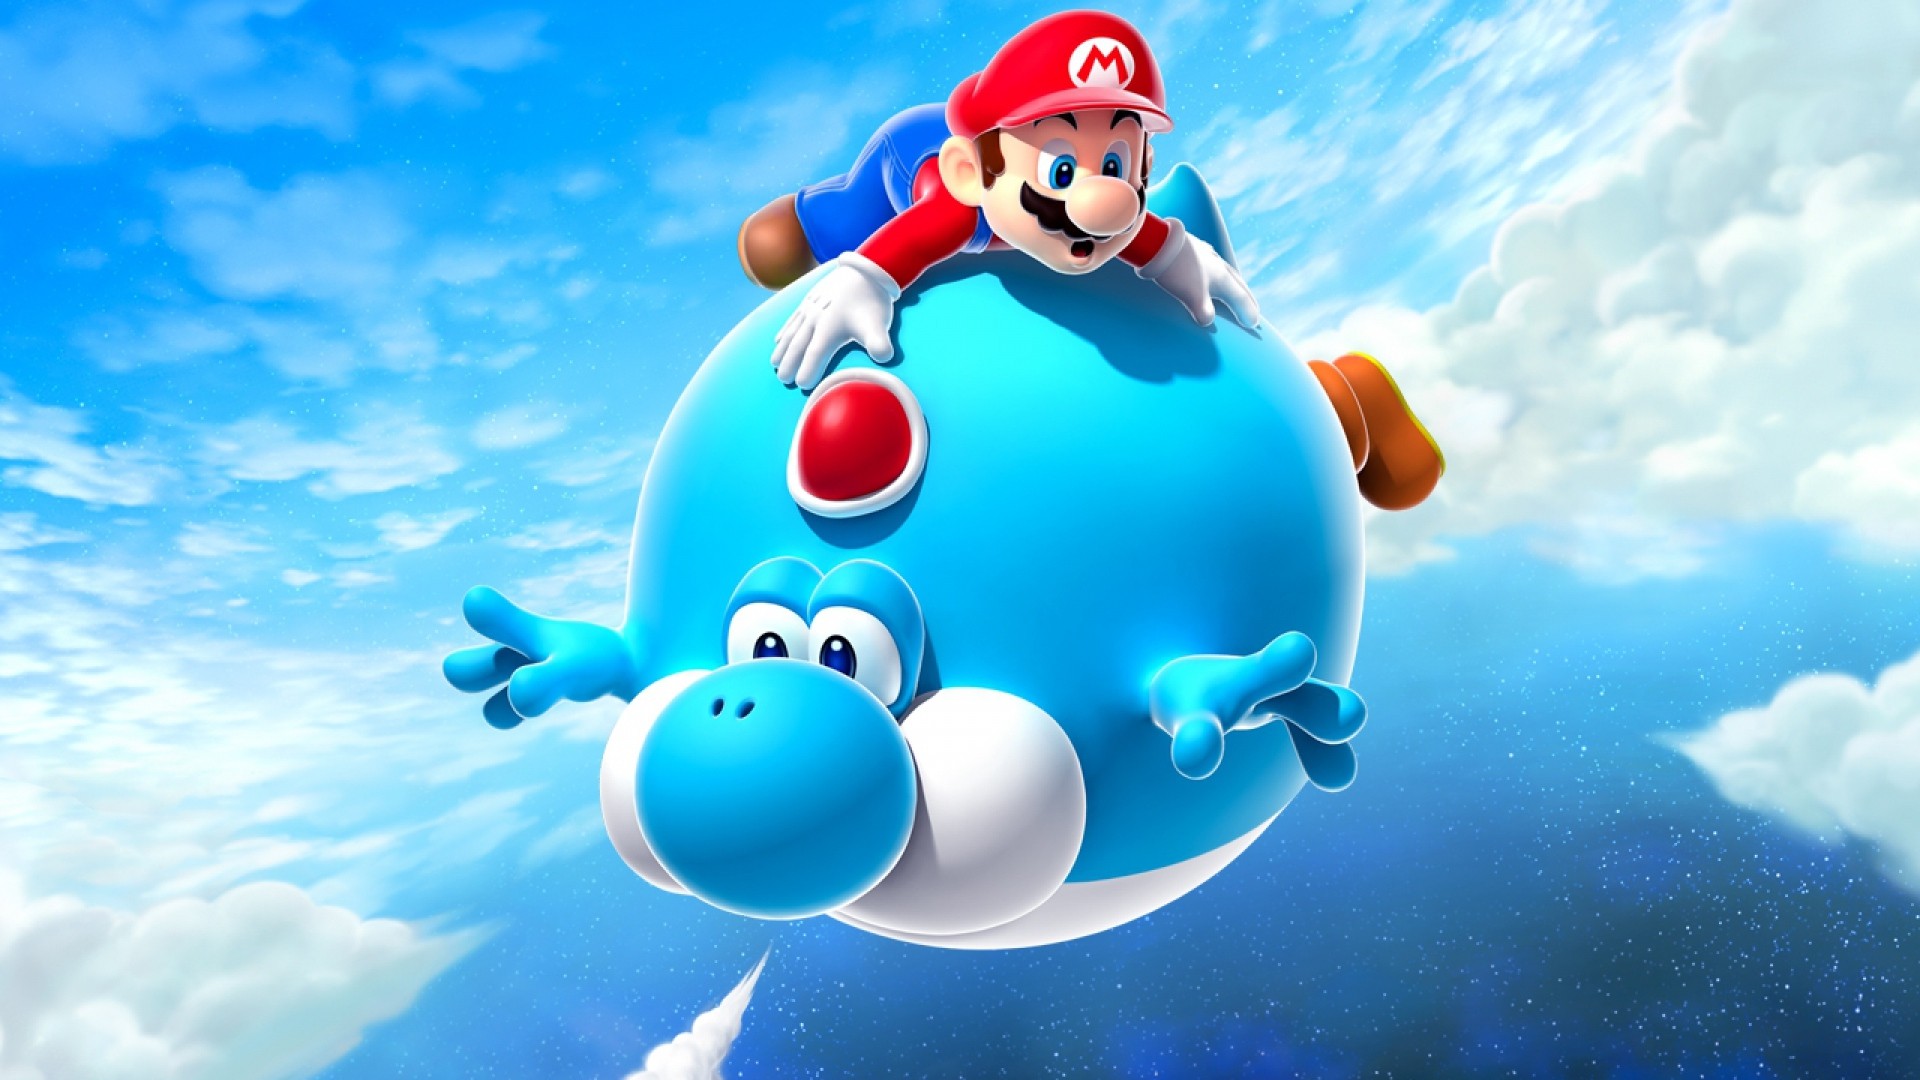 Mario Air Balloon Yoshi Blue Super Mario Galaxy Pictures - Super Mario Galaxy - HD Wallpaper 